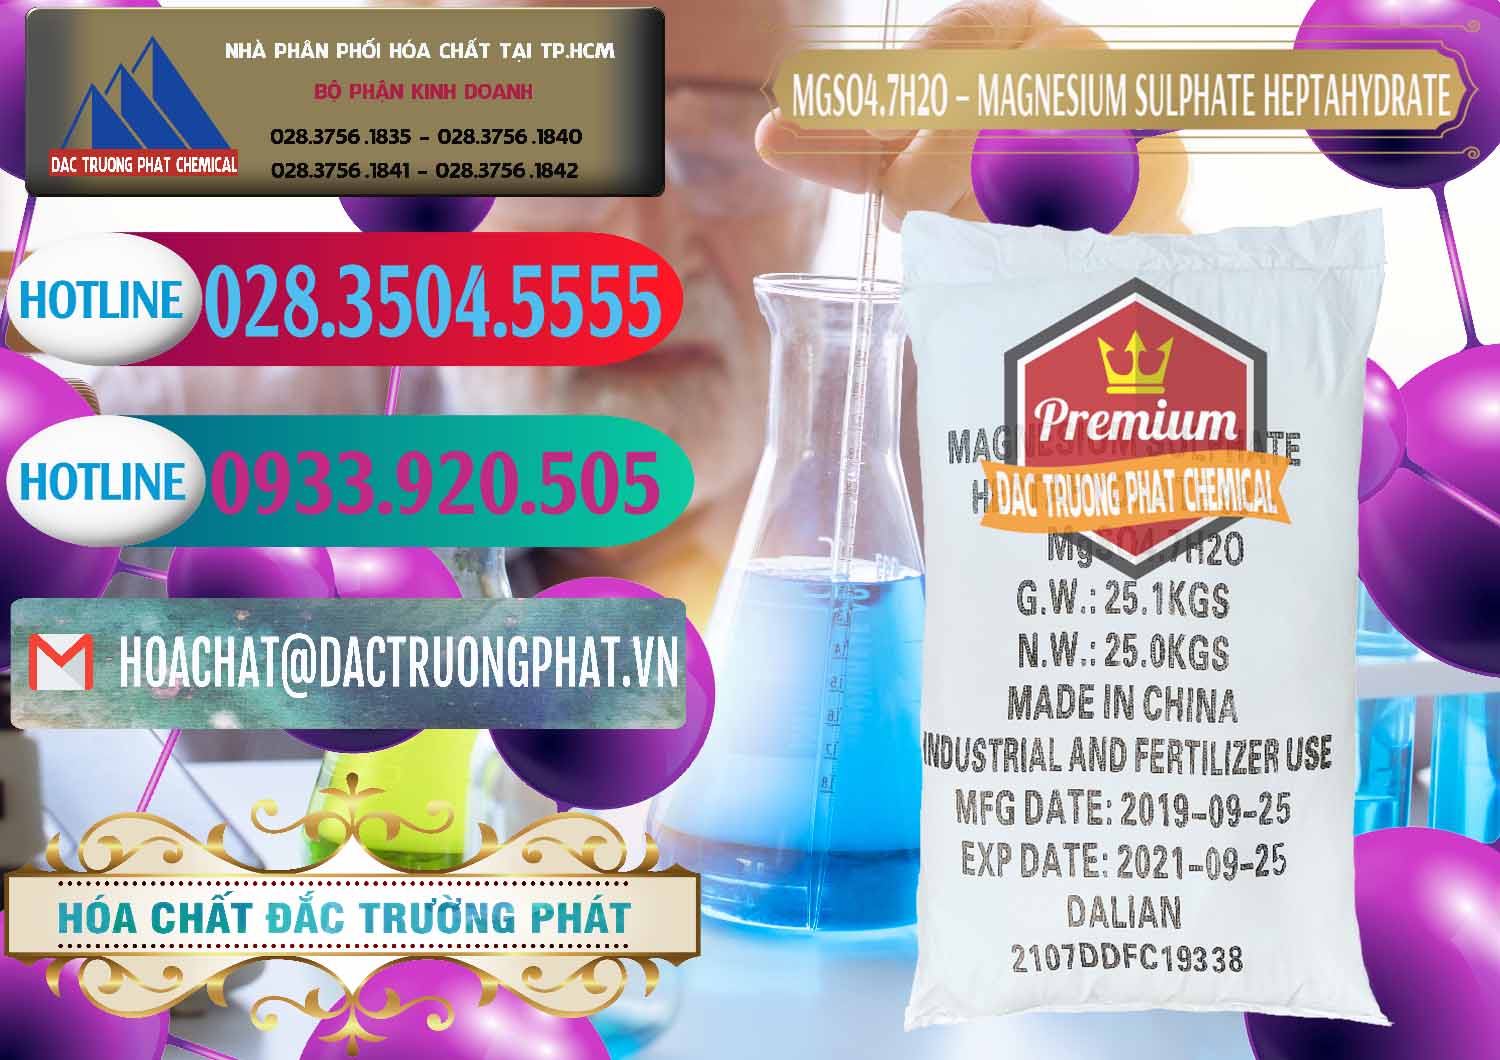 Nơi chuyên bán ( phân phối ) MGSO4.7H2O – Magnesium Sulphate Heptahydrate Trung Quốc China - 0094 - Công ty chuyên bán và cung cấp hóa chất tại TP.HCM - truongphat.vn